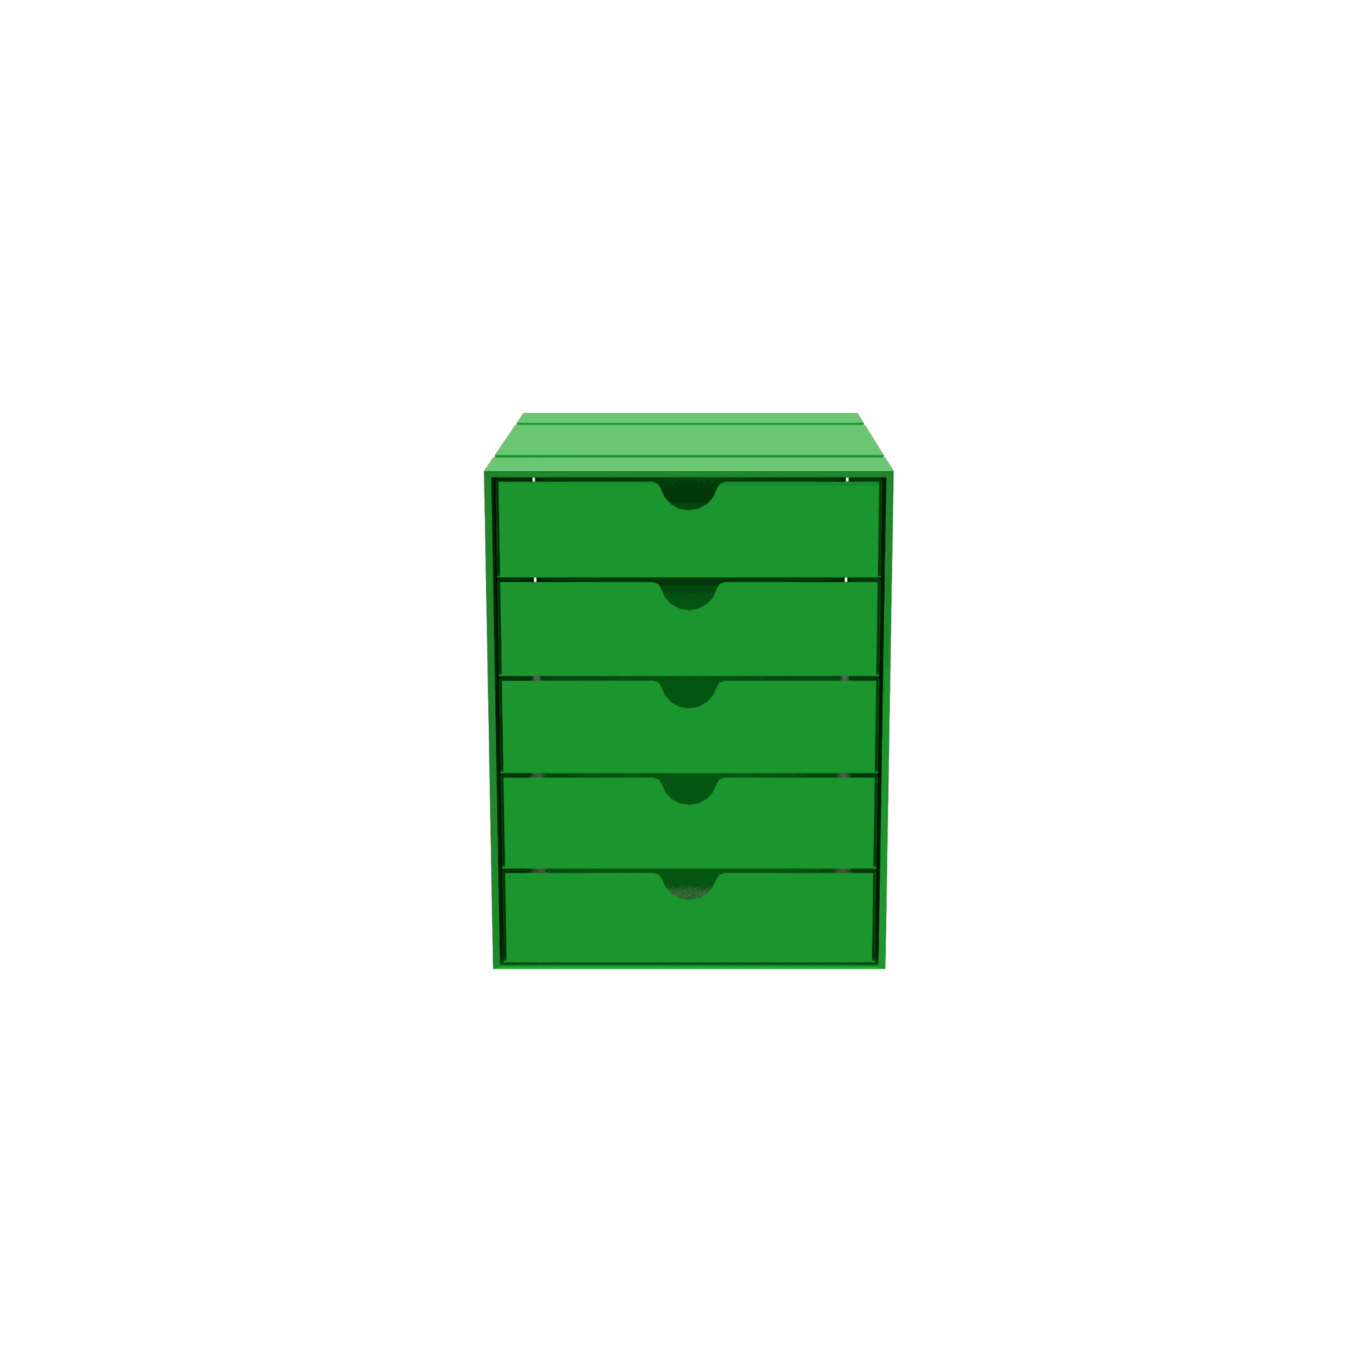 USM boîte Inos – 5 tiroirs - Image #11